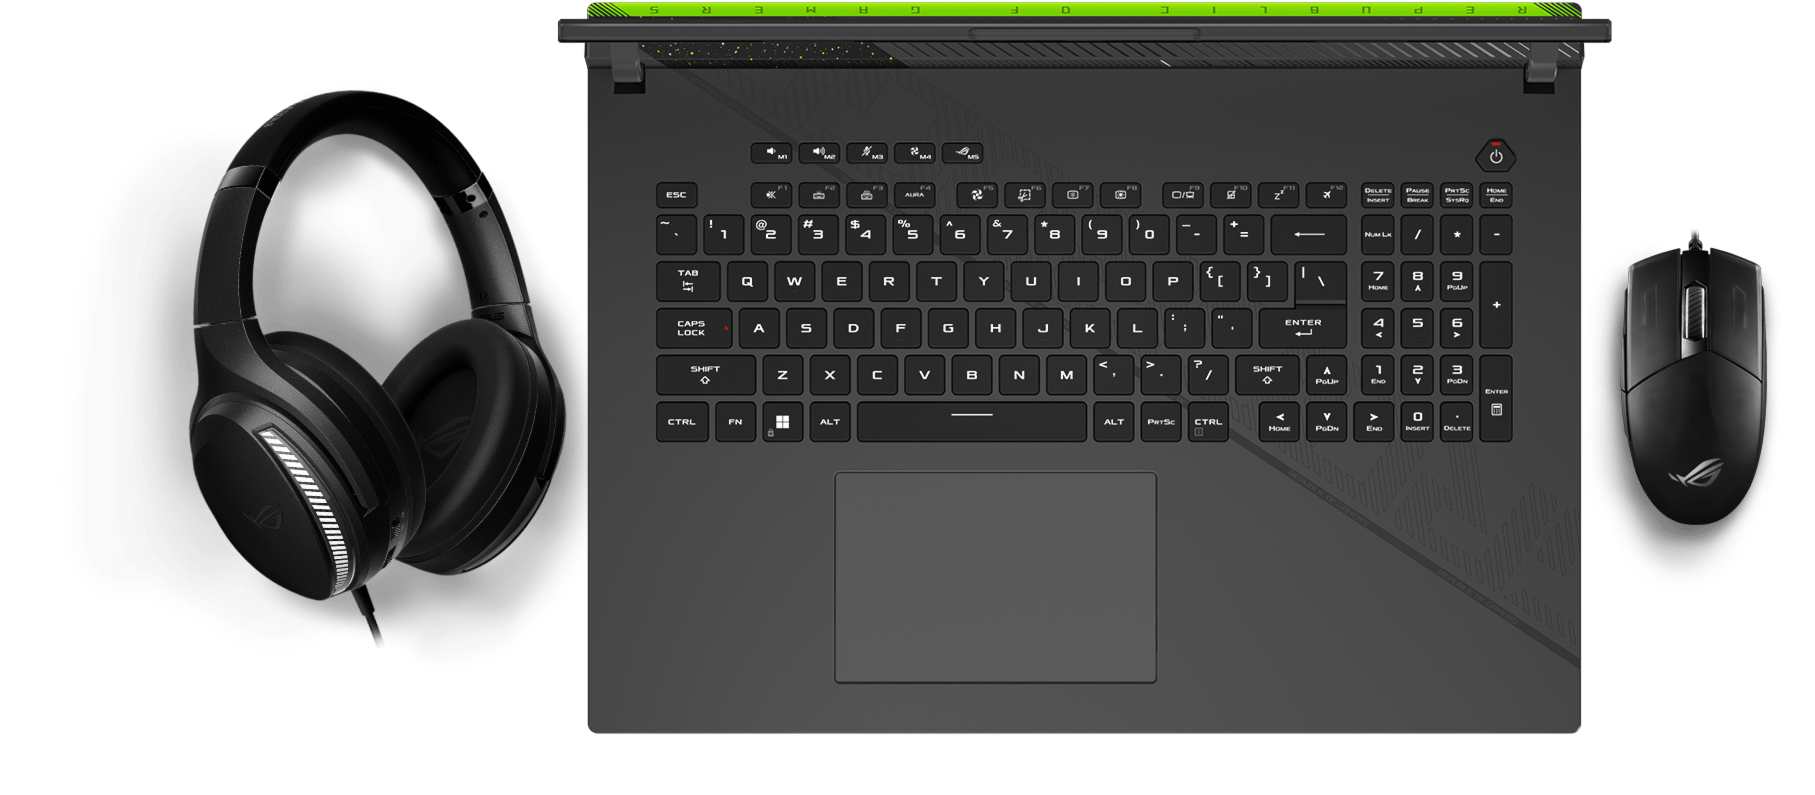 Weergave van het toetsenbord, met Aura-lichteffecten die synchroniseren met een muis en een headset.